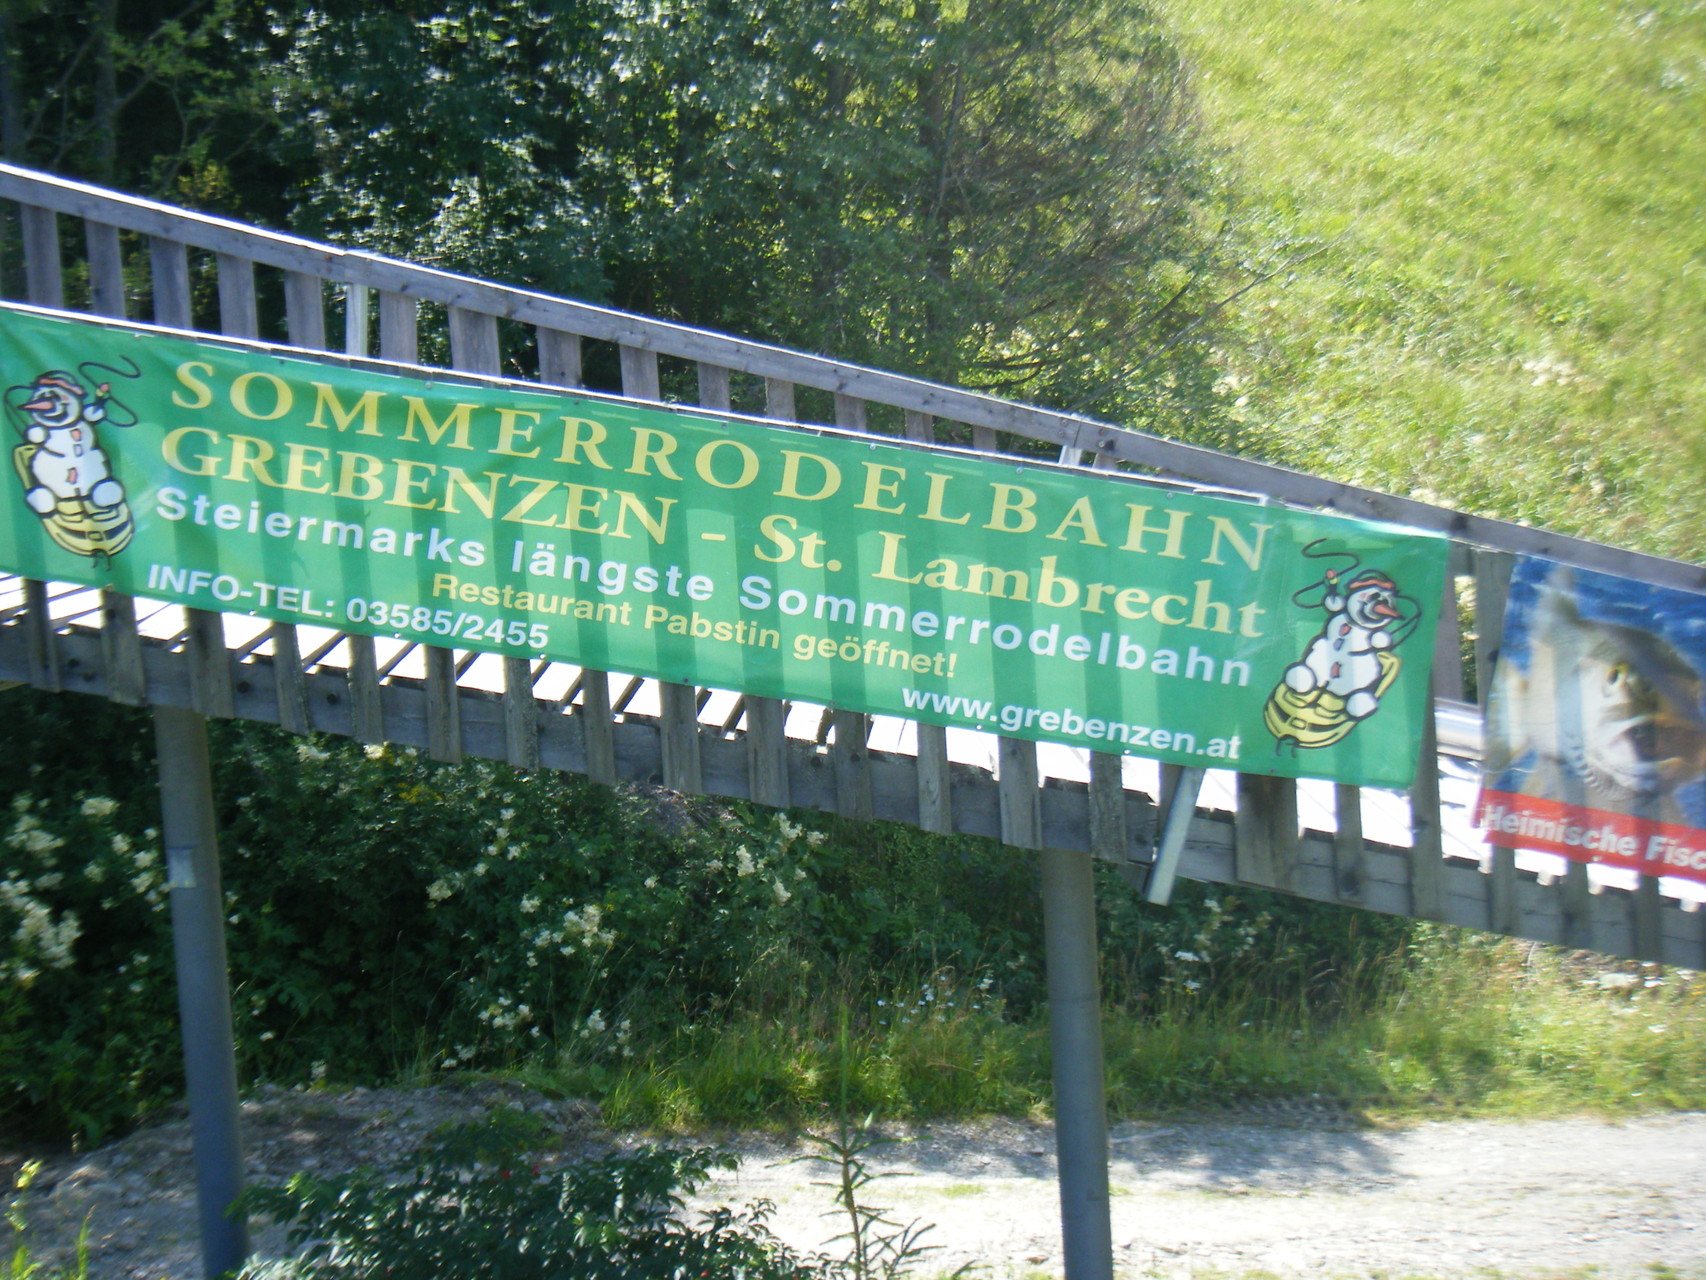 längste Sommerrodelbahn in der Steiermark